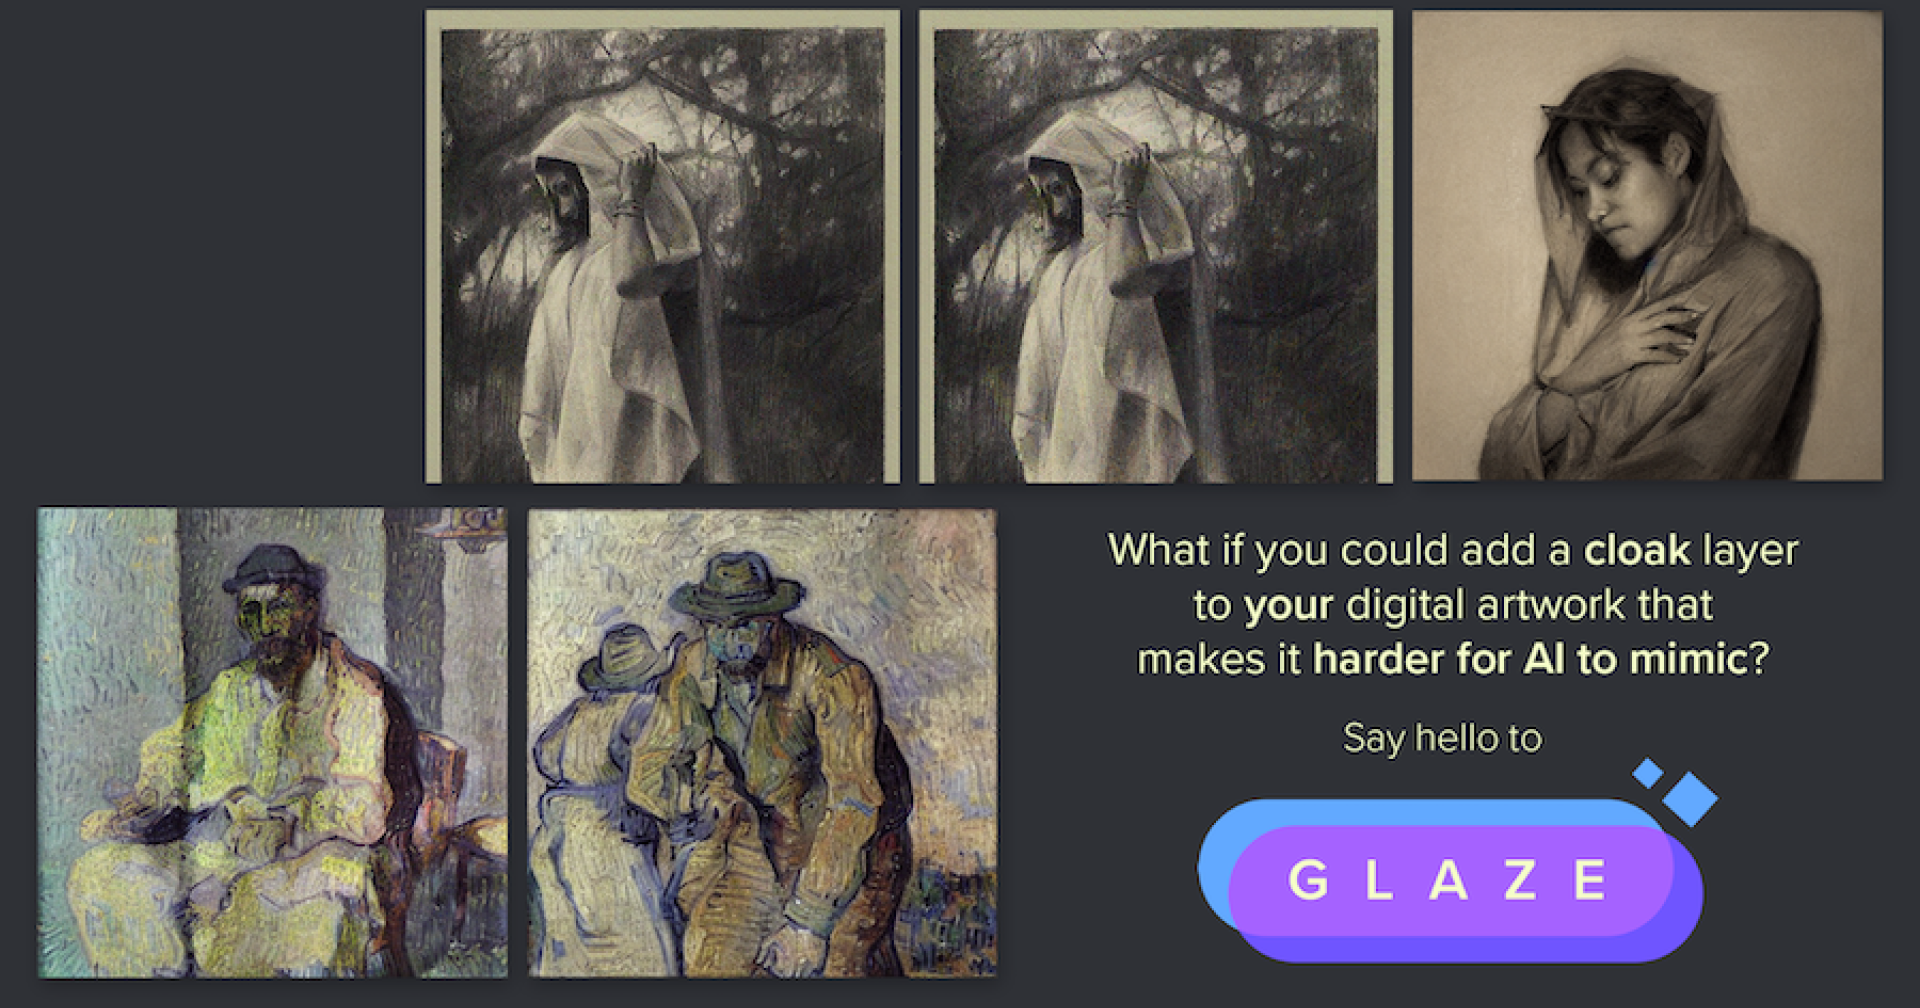 Glaze เครื่องมือป้องกันงานศิลปะไม่ให้ถูก AI ลอกลายเส้น ให้คนดูงานได้ แต่เอไอดูแล้วงง